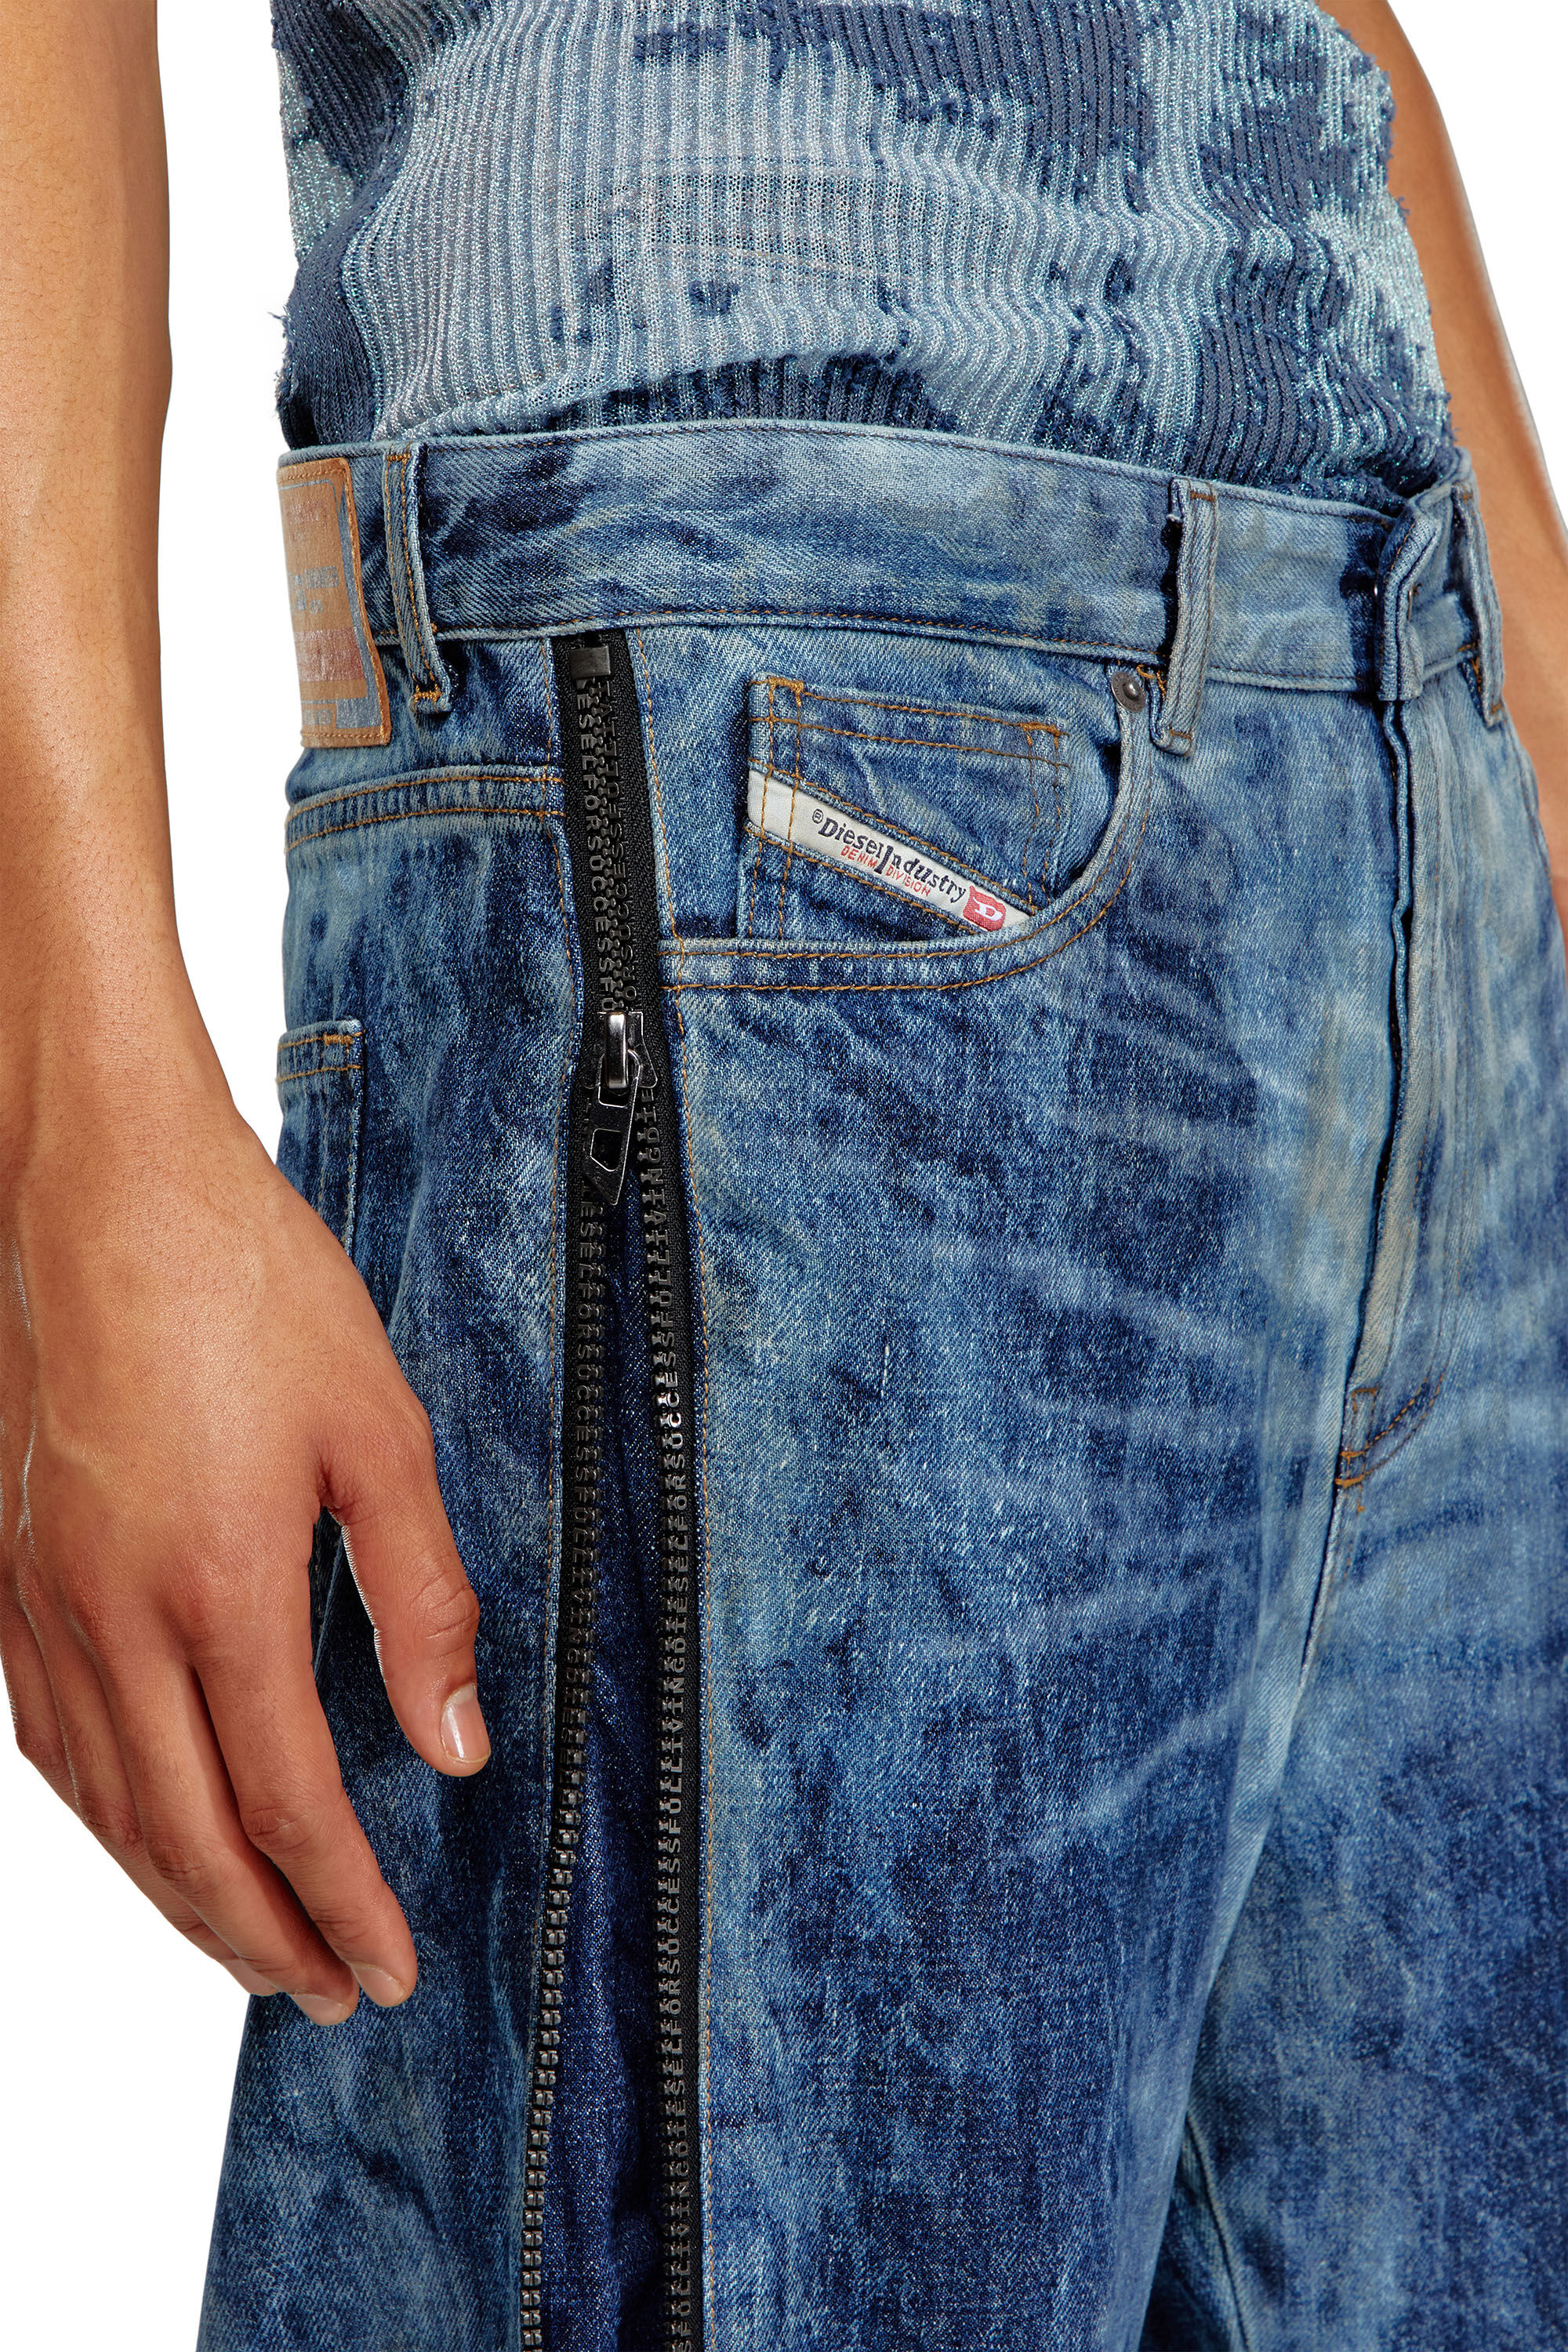 【正規品】DIESEL D-RISE Straight Jeans blueご購入ご遠慮下さいませ